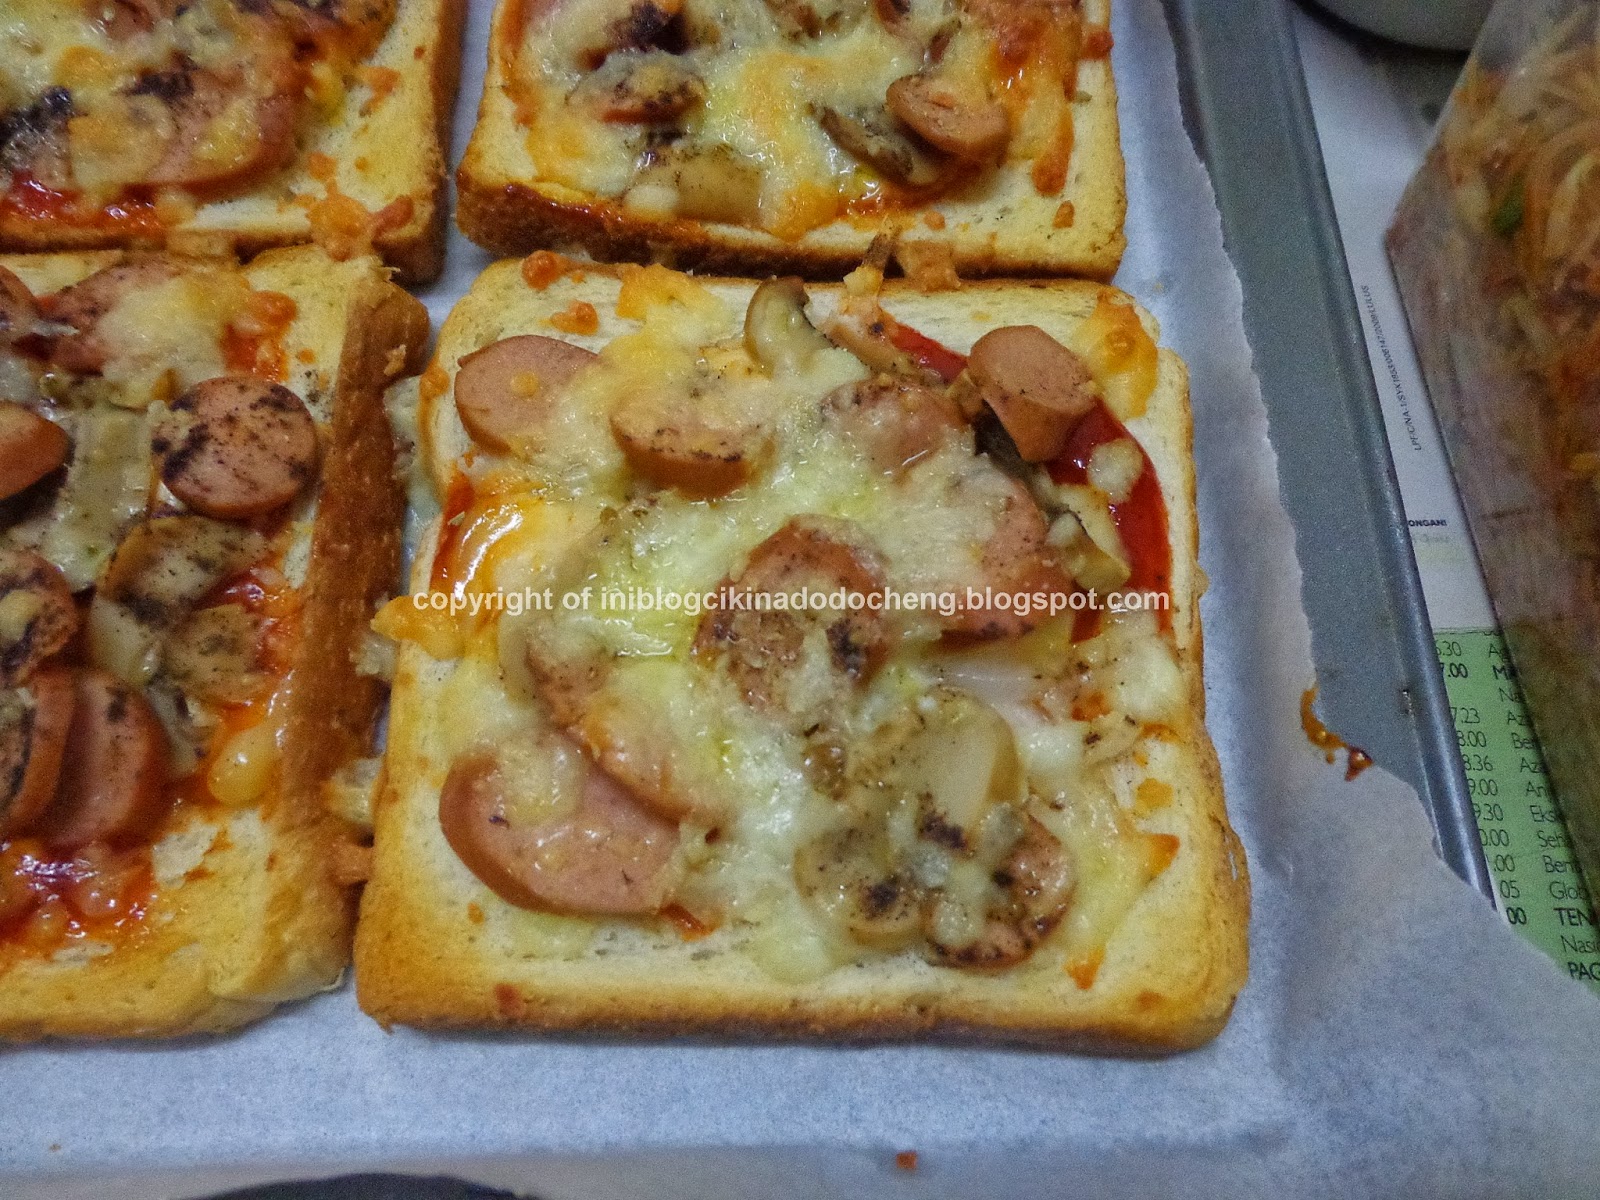 Blog cik ina: Cara membuat pizza yang mudah dan sedap 